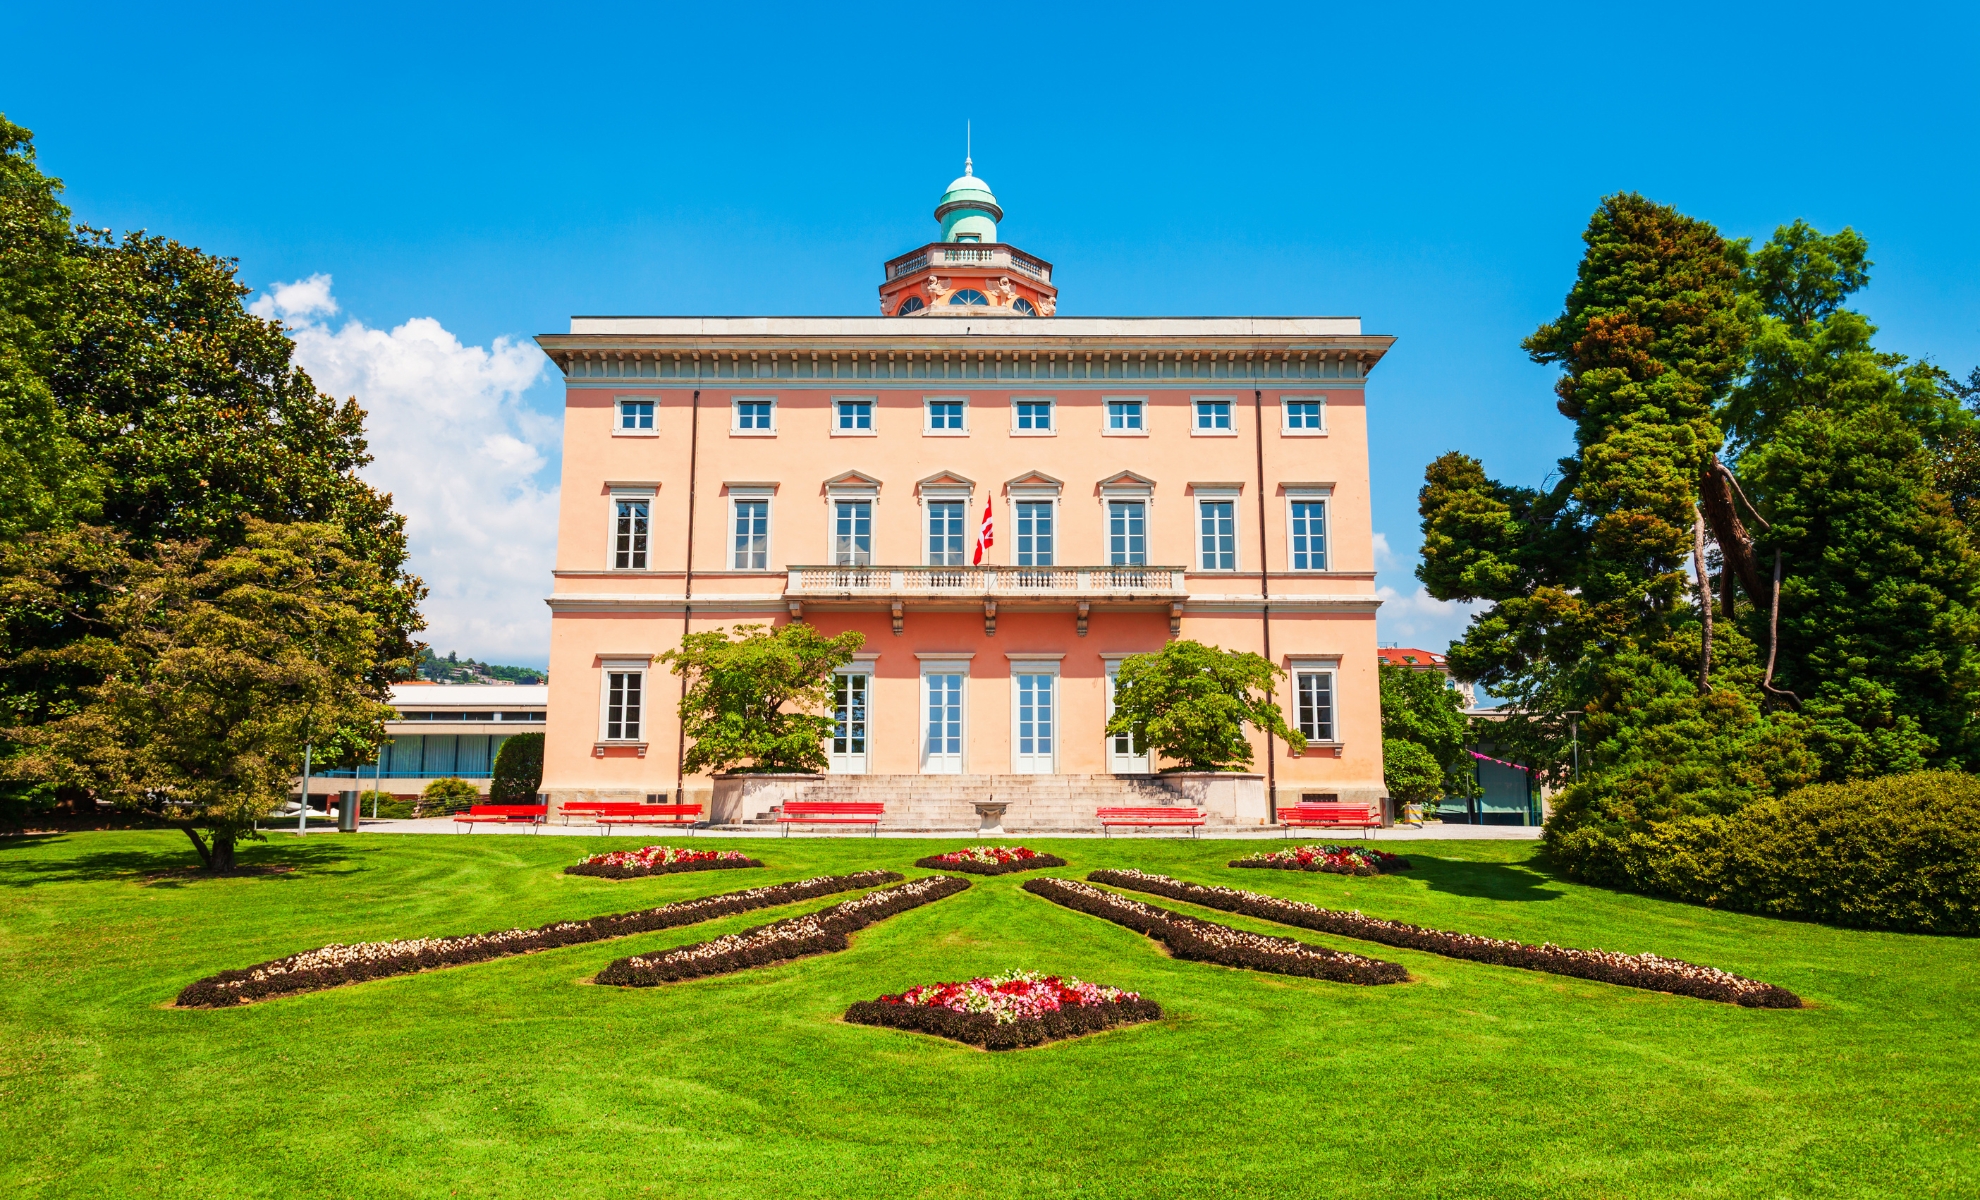 Villa Ciani dans le parc Ciani, Lugano en Suisse